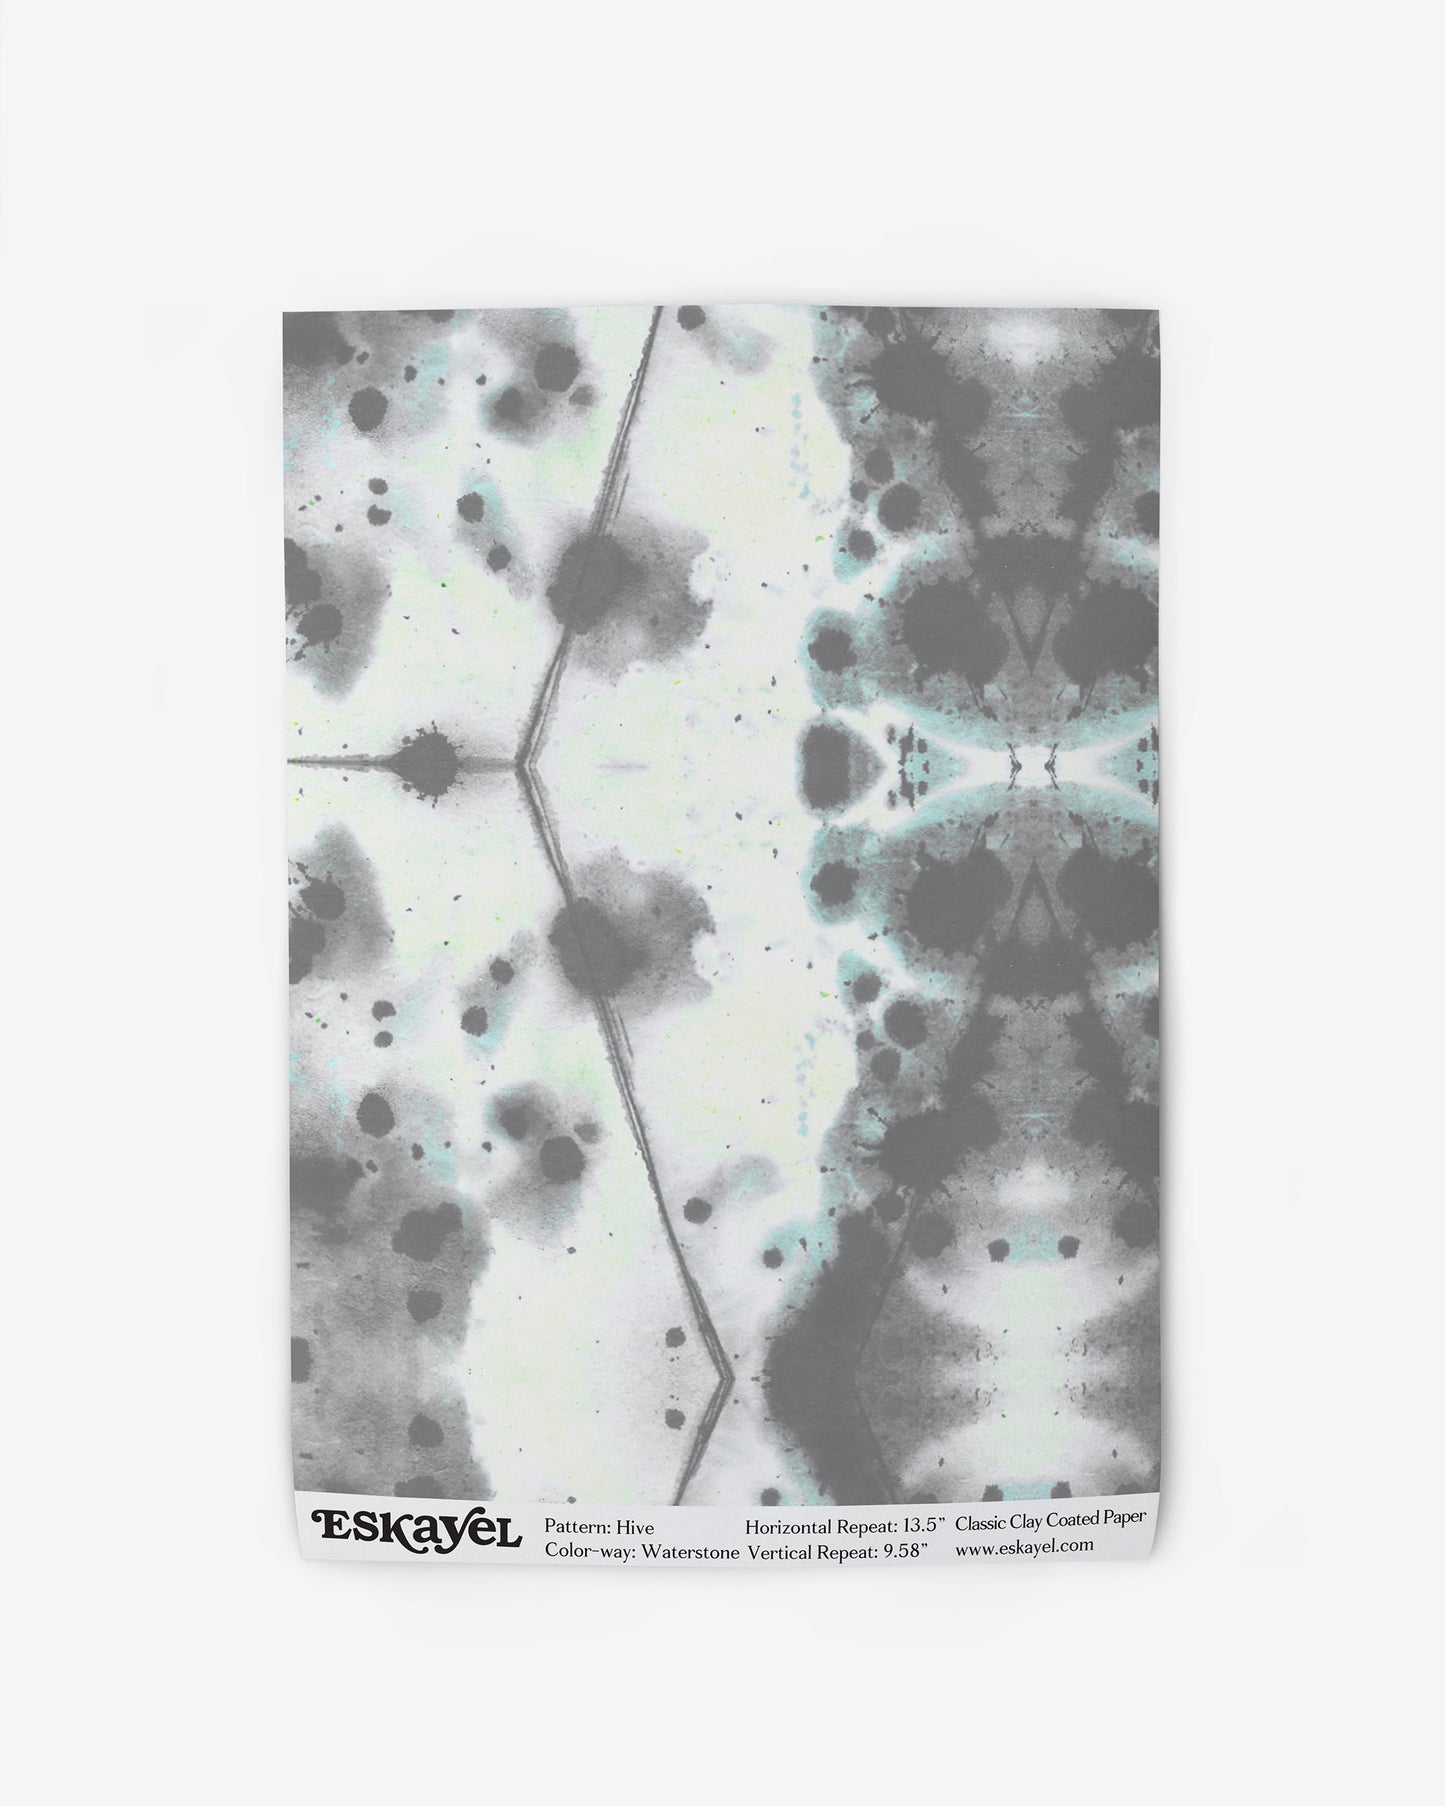 Hive Wallpaper Sample||Waterstone